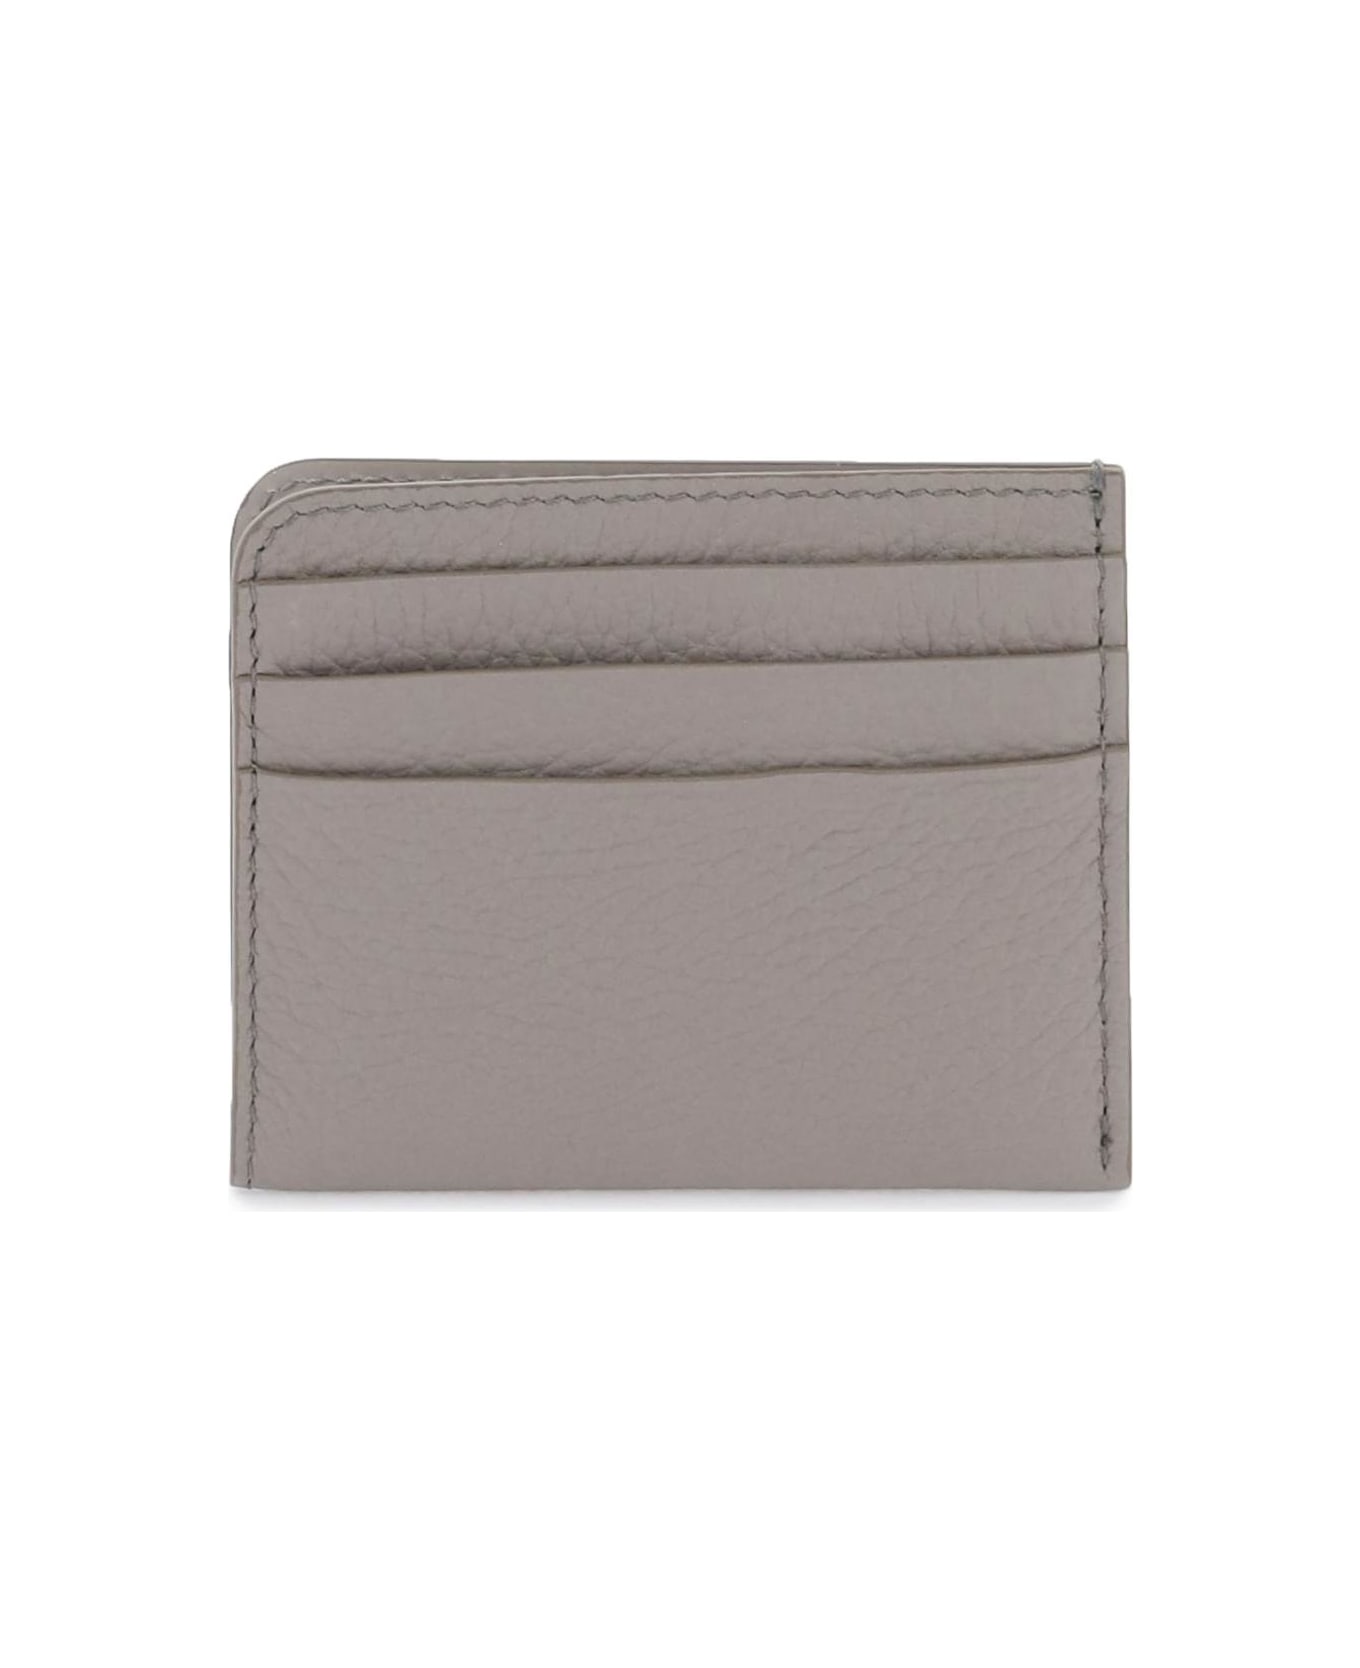 Maison Margiela Leather Cardholder - SMOKE (Grey)